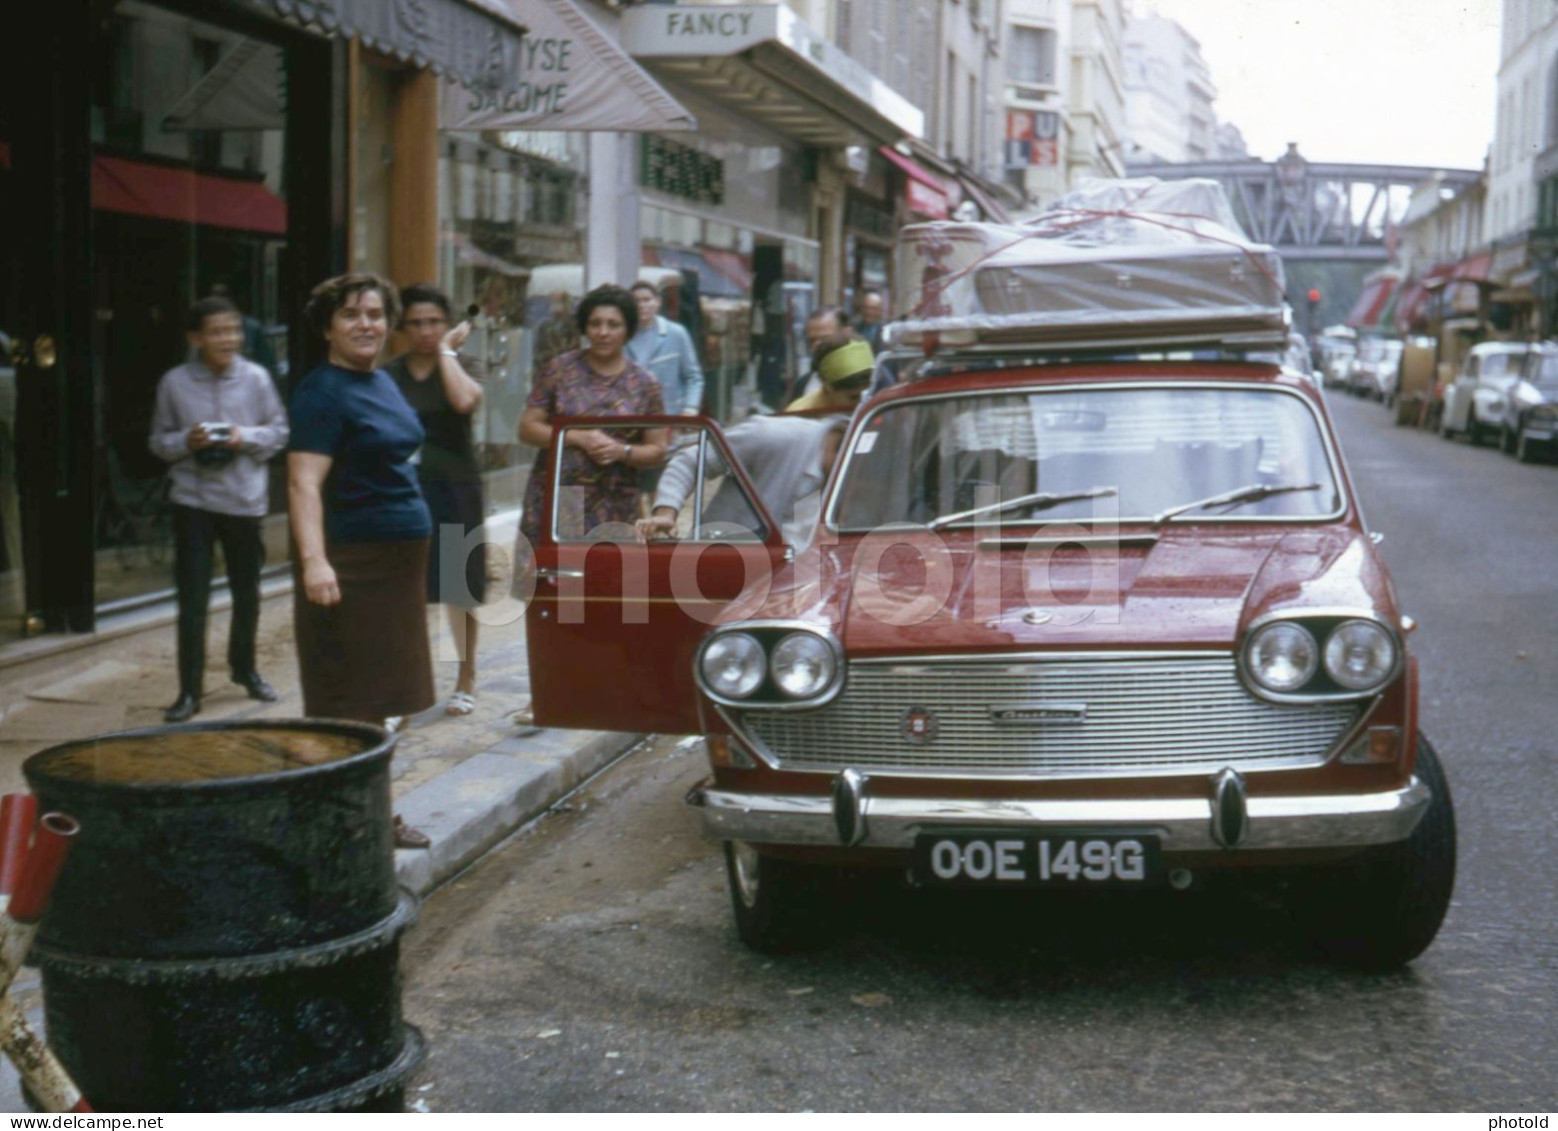 1969 UK PLATE AUSTIN 3 LITRE CAR RUE DU COMMERCE PARIS FRANCE 35mm AMATEUR DIAPOSITIVE SLIDE Not PHOTO No FOTO NB4129 - Diapositives